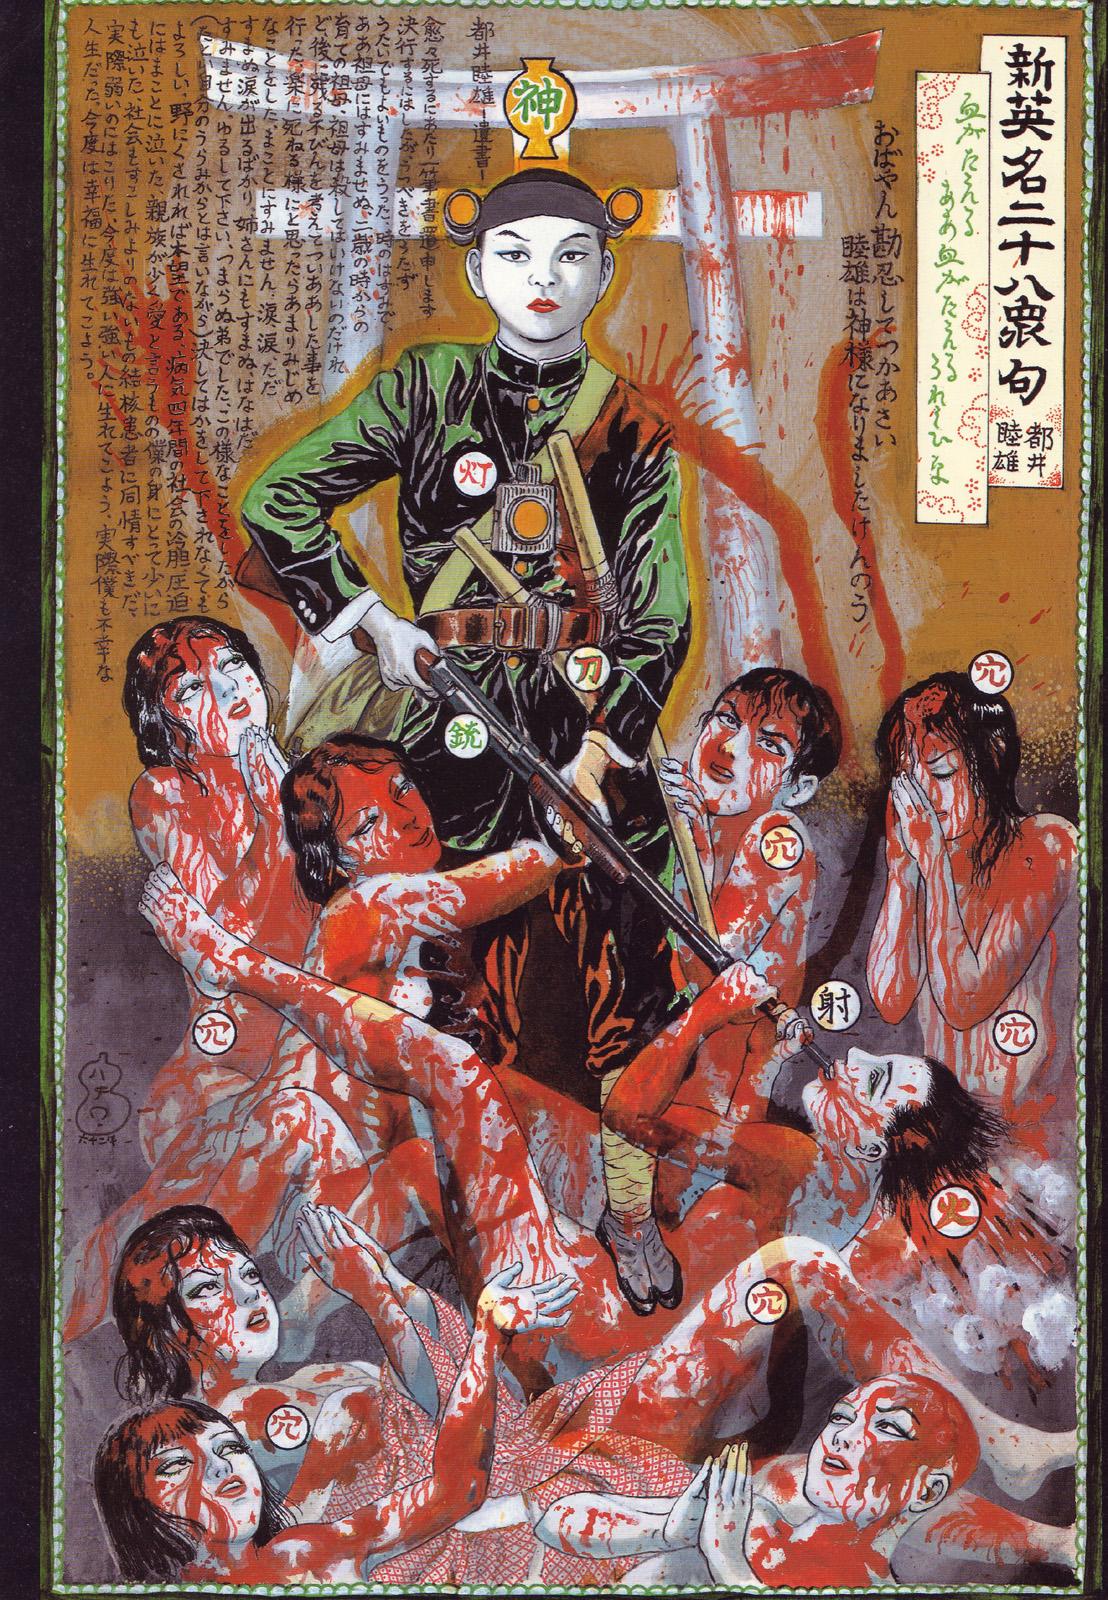 江戸昭和競作 - Bloody Ukiyo-e in 1866 & 1988 23